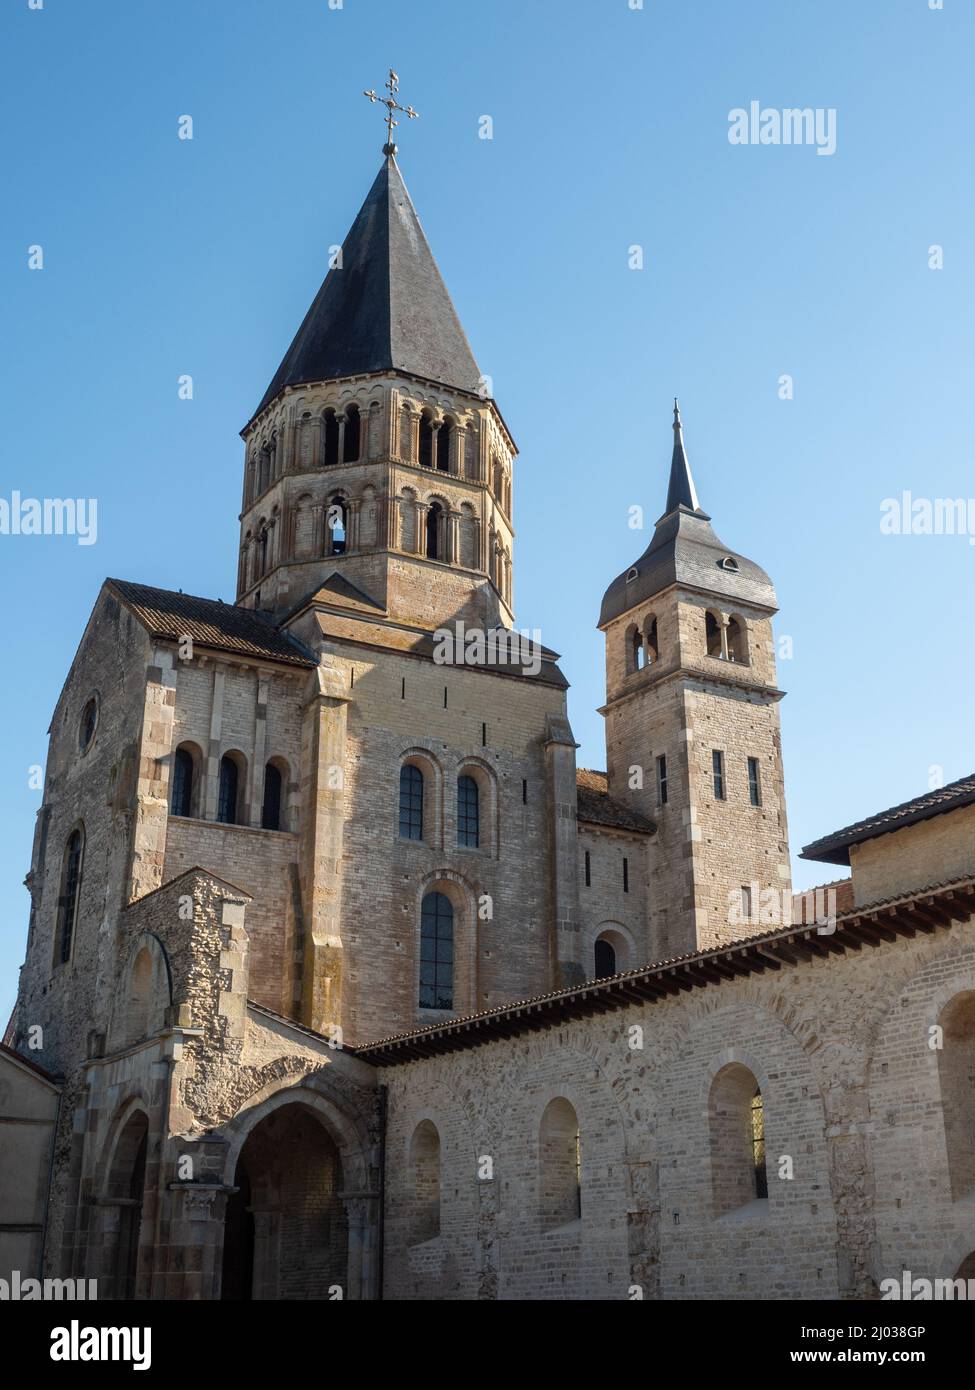 Mura e torri che è l'ultimo angolo rimanente della chiesa abbaziale enorme costruita a Cluny nel 1100s, Cluny, Saone-et-Loire, Borgogna, Francia Foto Stock